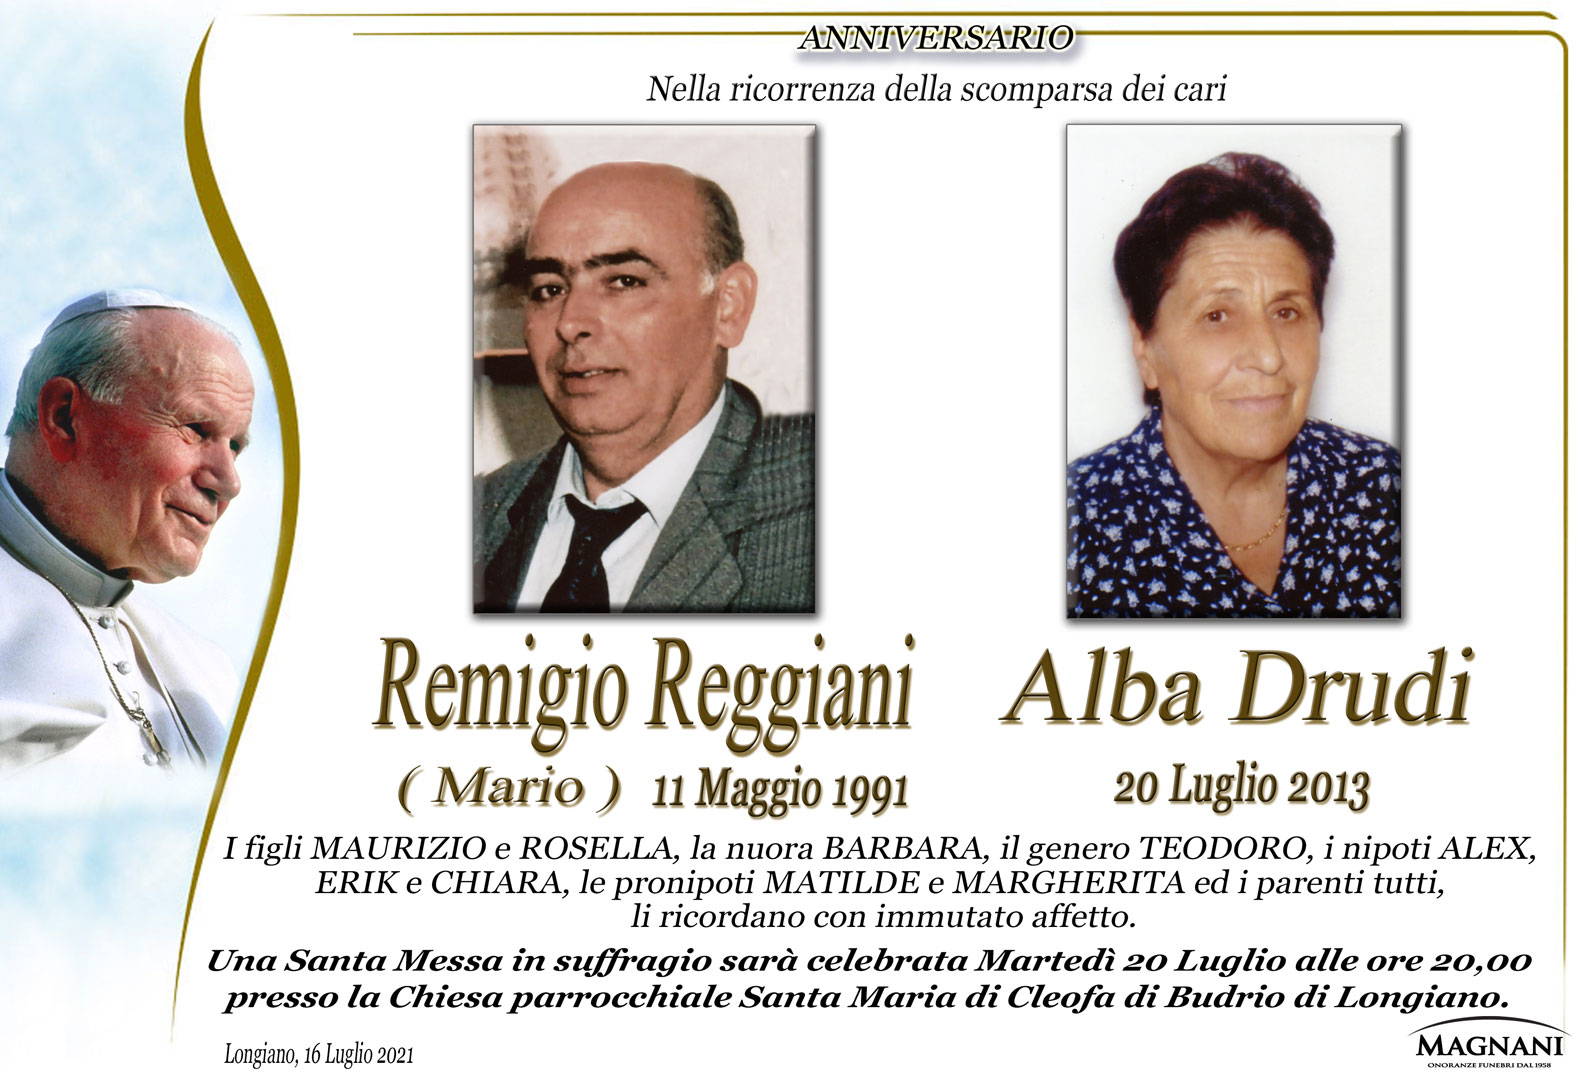 Remigio Reggiani e Alba Drudi